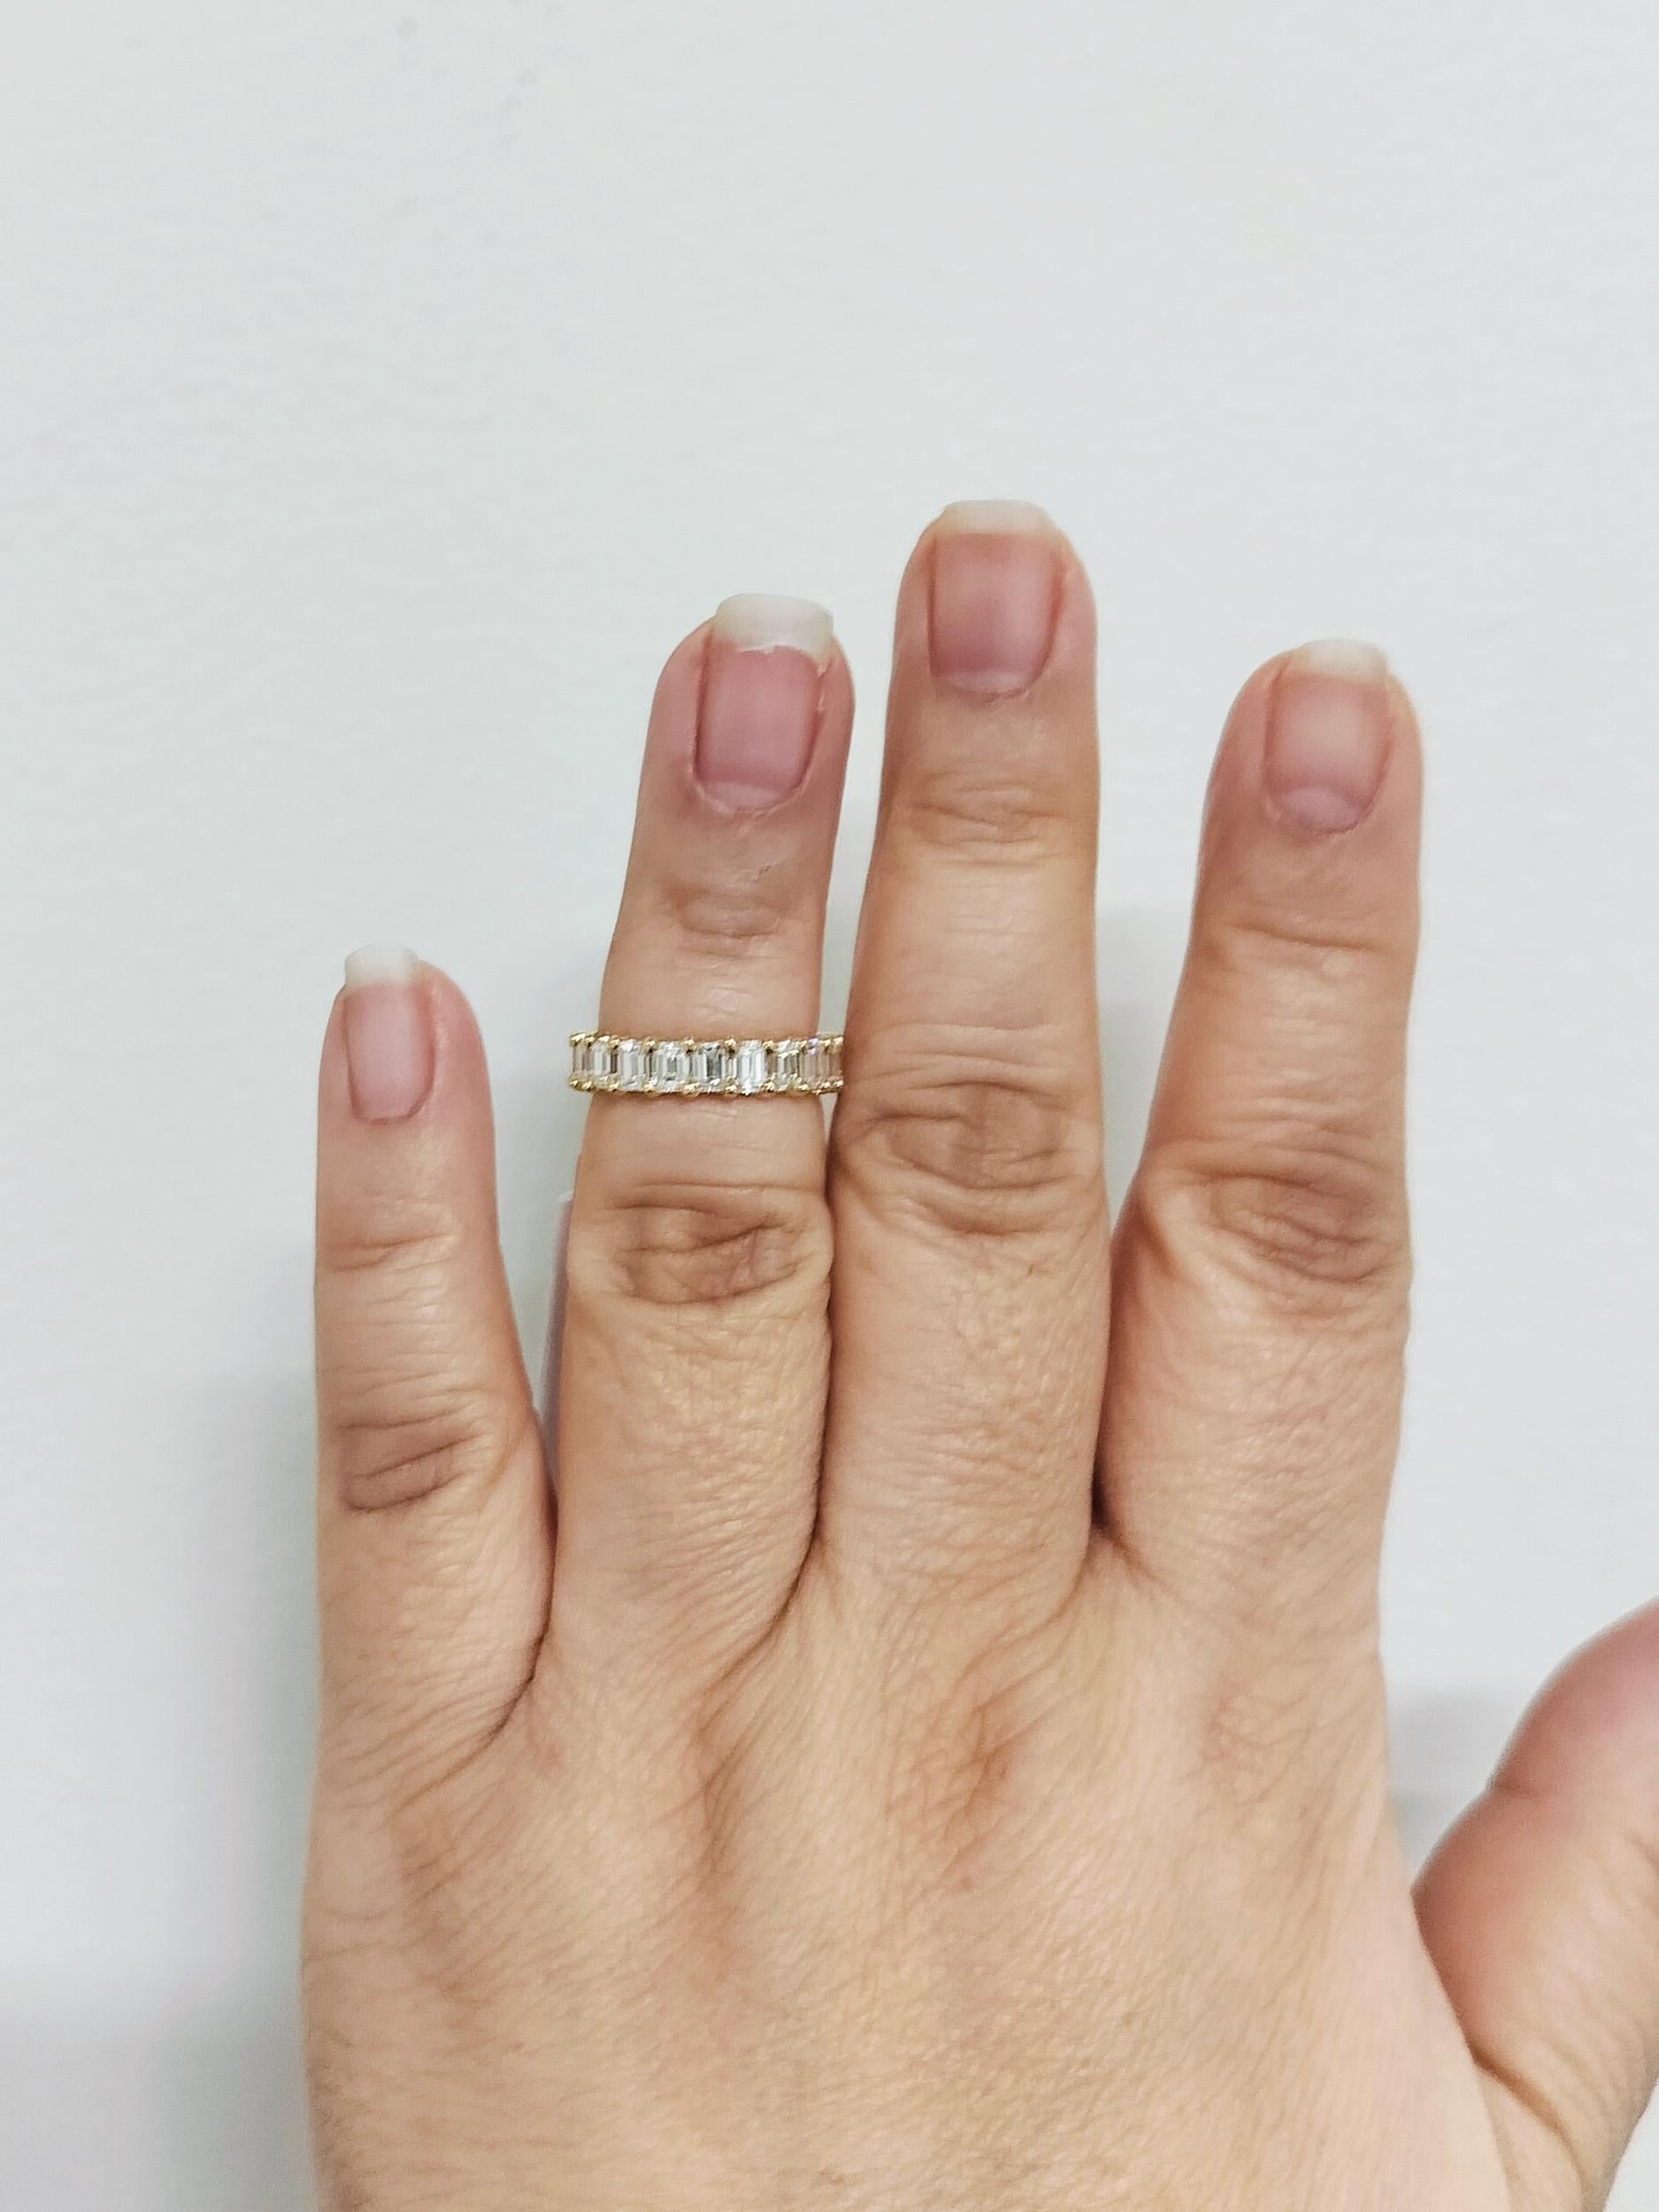 Wunderschöne 4,01 ct. weiße und helle Diamanten im Smaragdschliff von guter Qualität.  Handgefertigt in 18k Gelbgold.  Ringgröße 5,75.  Insgesamt 21 Steine.
